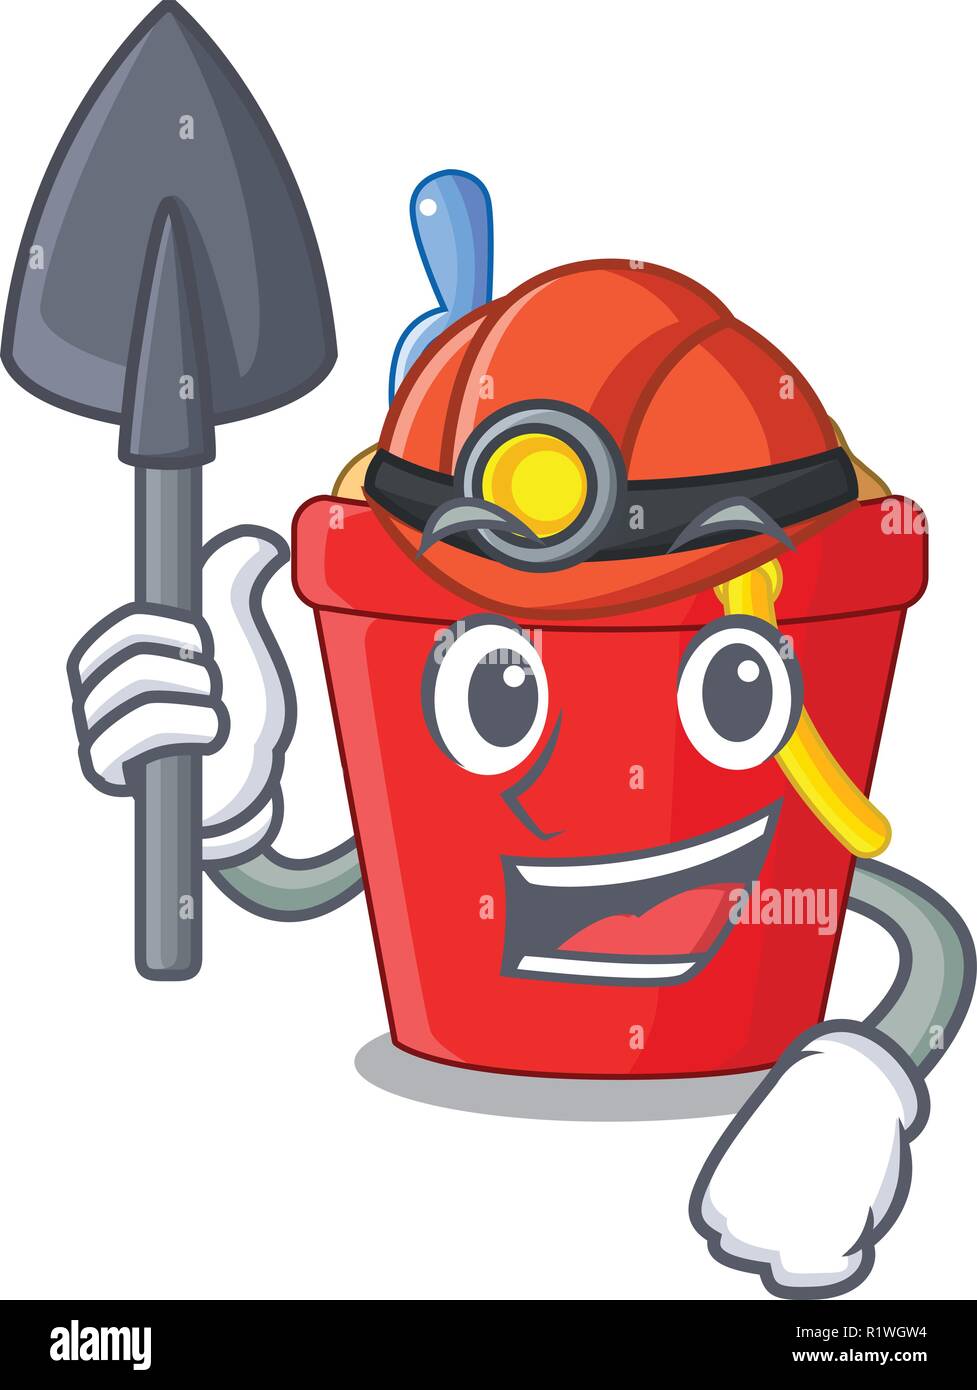 Miner picture beach bucket on shovel cartoon Stock Vector Image & Art ...